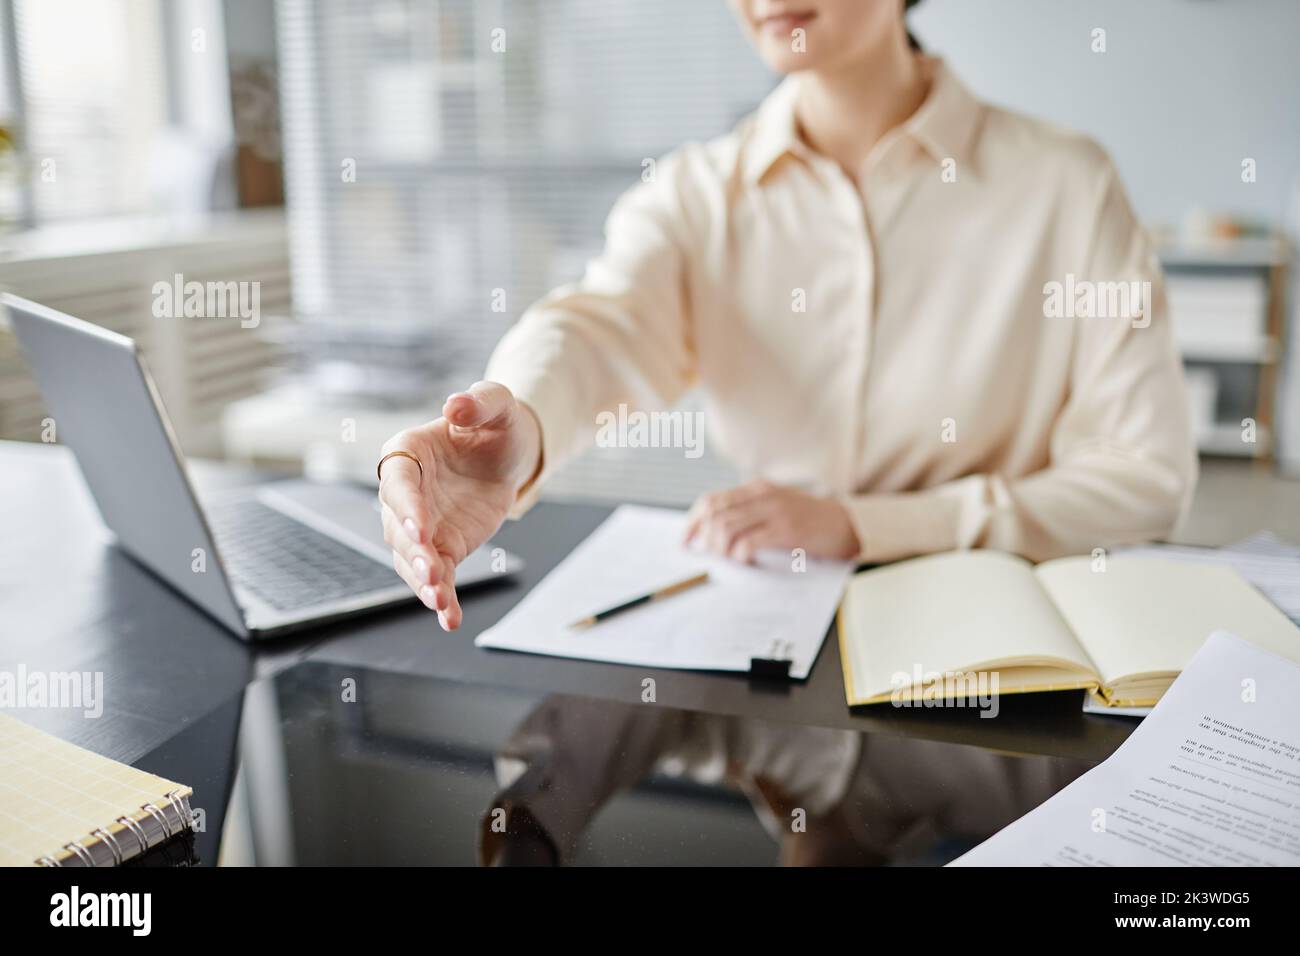 Nahaufnahme einer anonymen Geschäftsfrau, die die Hand ausstreckt, um die Kamera in der Besprechung zu begrüßen, Platz kopieren Stockfoto